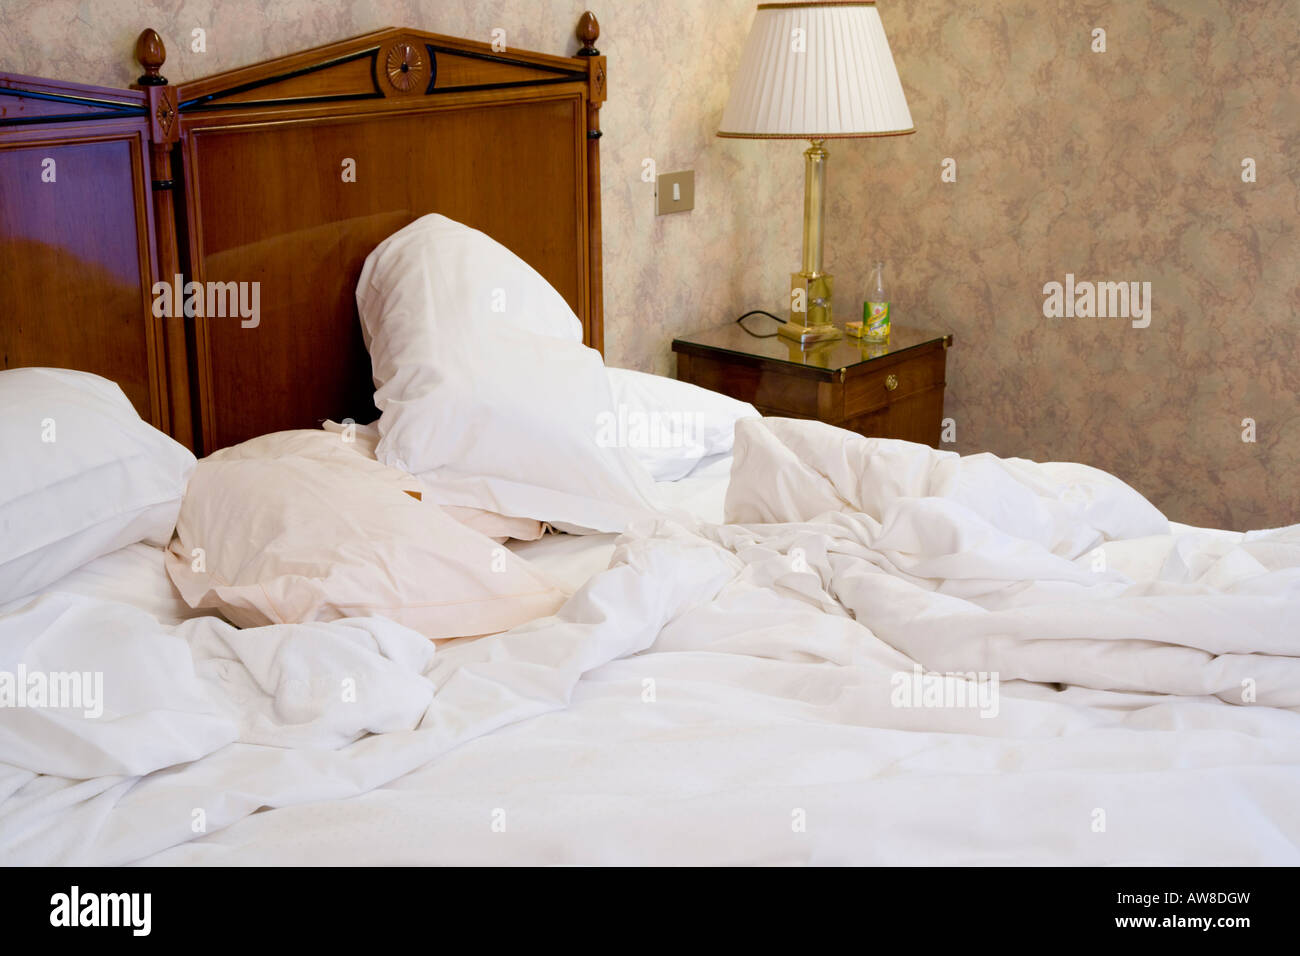 Naturweg Hotel Schlafzimmer Bettwäsche zerzaust Chaos chaotisch Kissen unordentlich Stockfoto